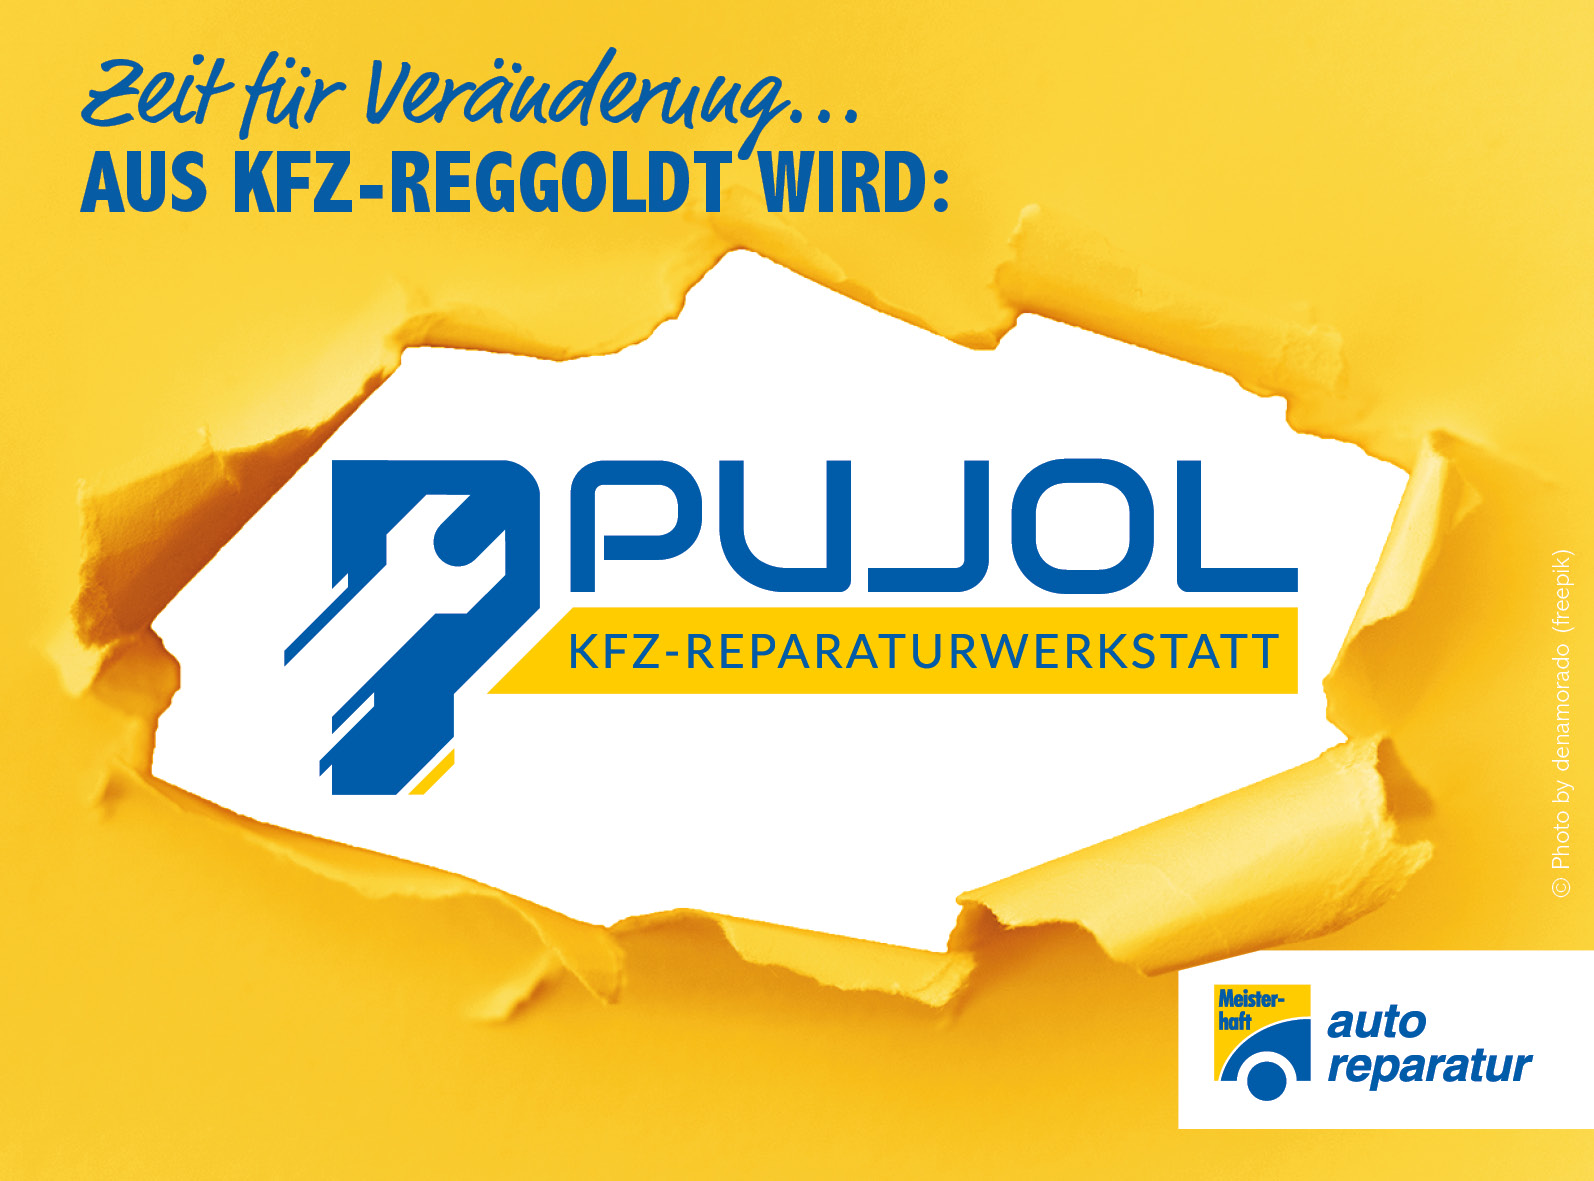 Aus Kfz-Reggoldt wird nun nach 4 Jahren „Pujol Kfz-Reparaturwerkstatt“.